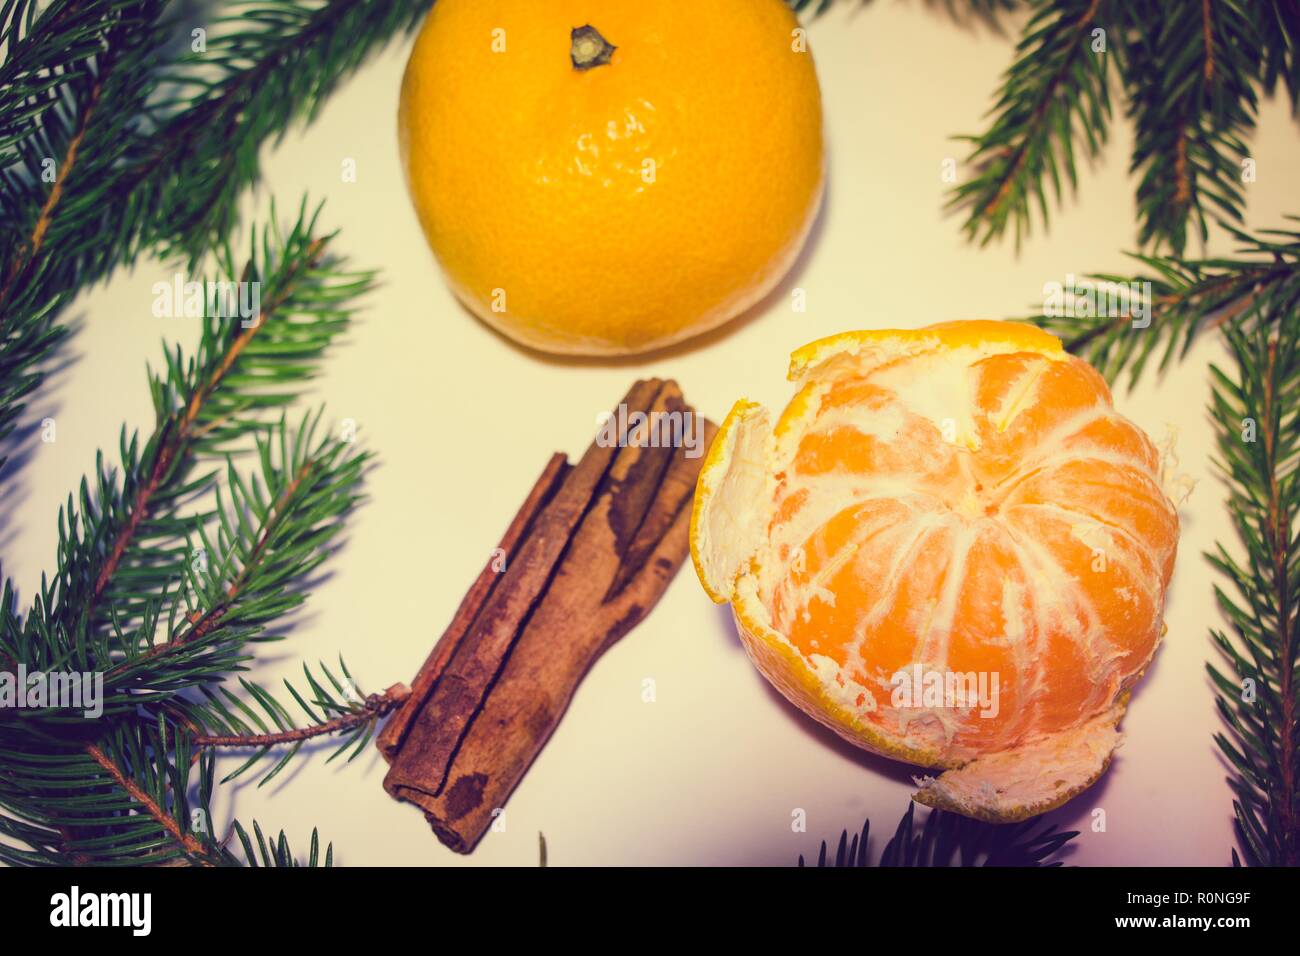 Deux mandarines, dont une est pelée, reposent sur un fond blanc. Autour de la tangerine sont branches et quelques bâtons de cannelle parfumé. Banque D'Images